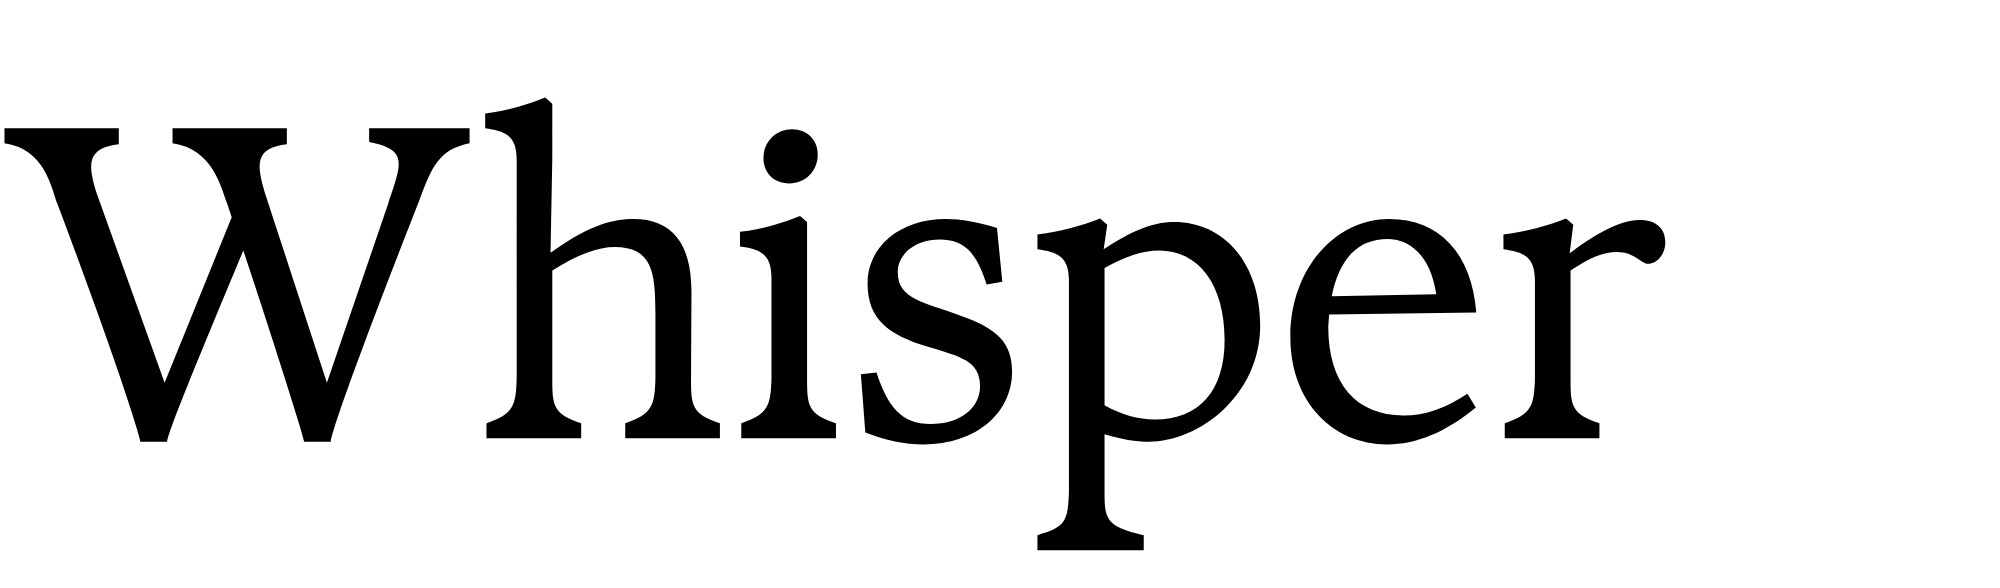 Whisper - AI technology's - black&white logo 